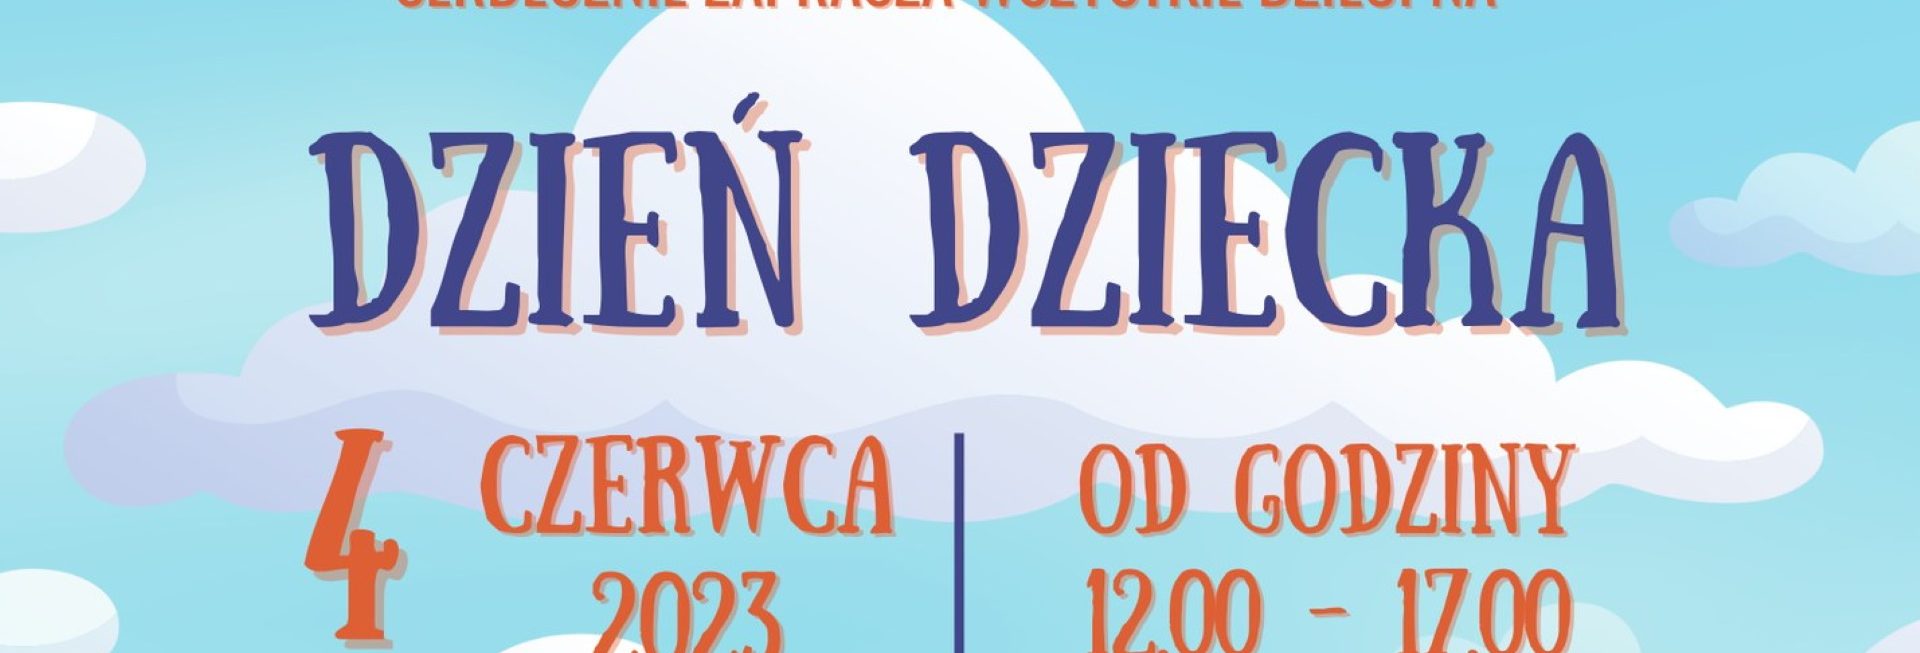 Plakat zapraszający do miejscowości Świątki w powiecie Olsztyńskim na Dzień Dziecka Świątki 2023.